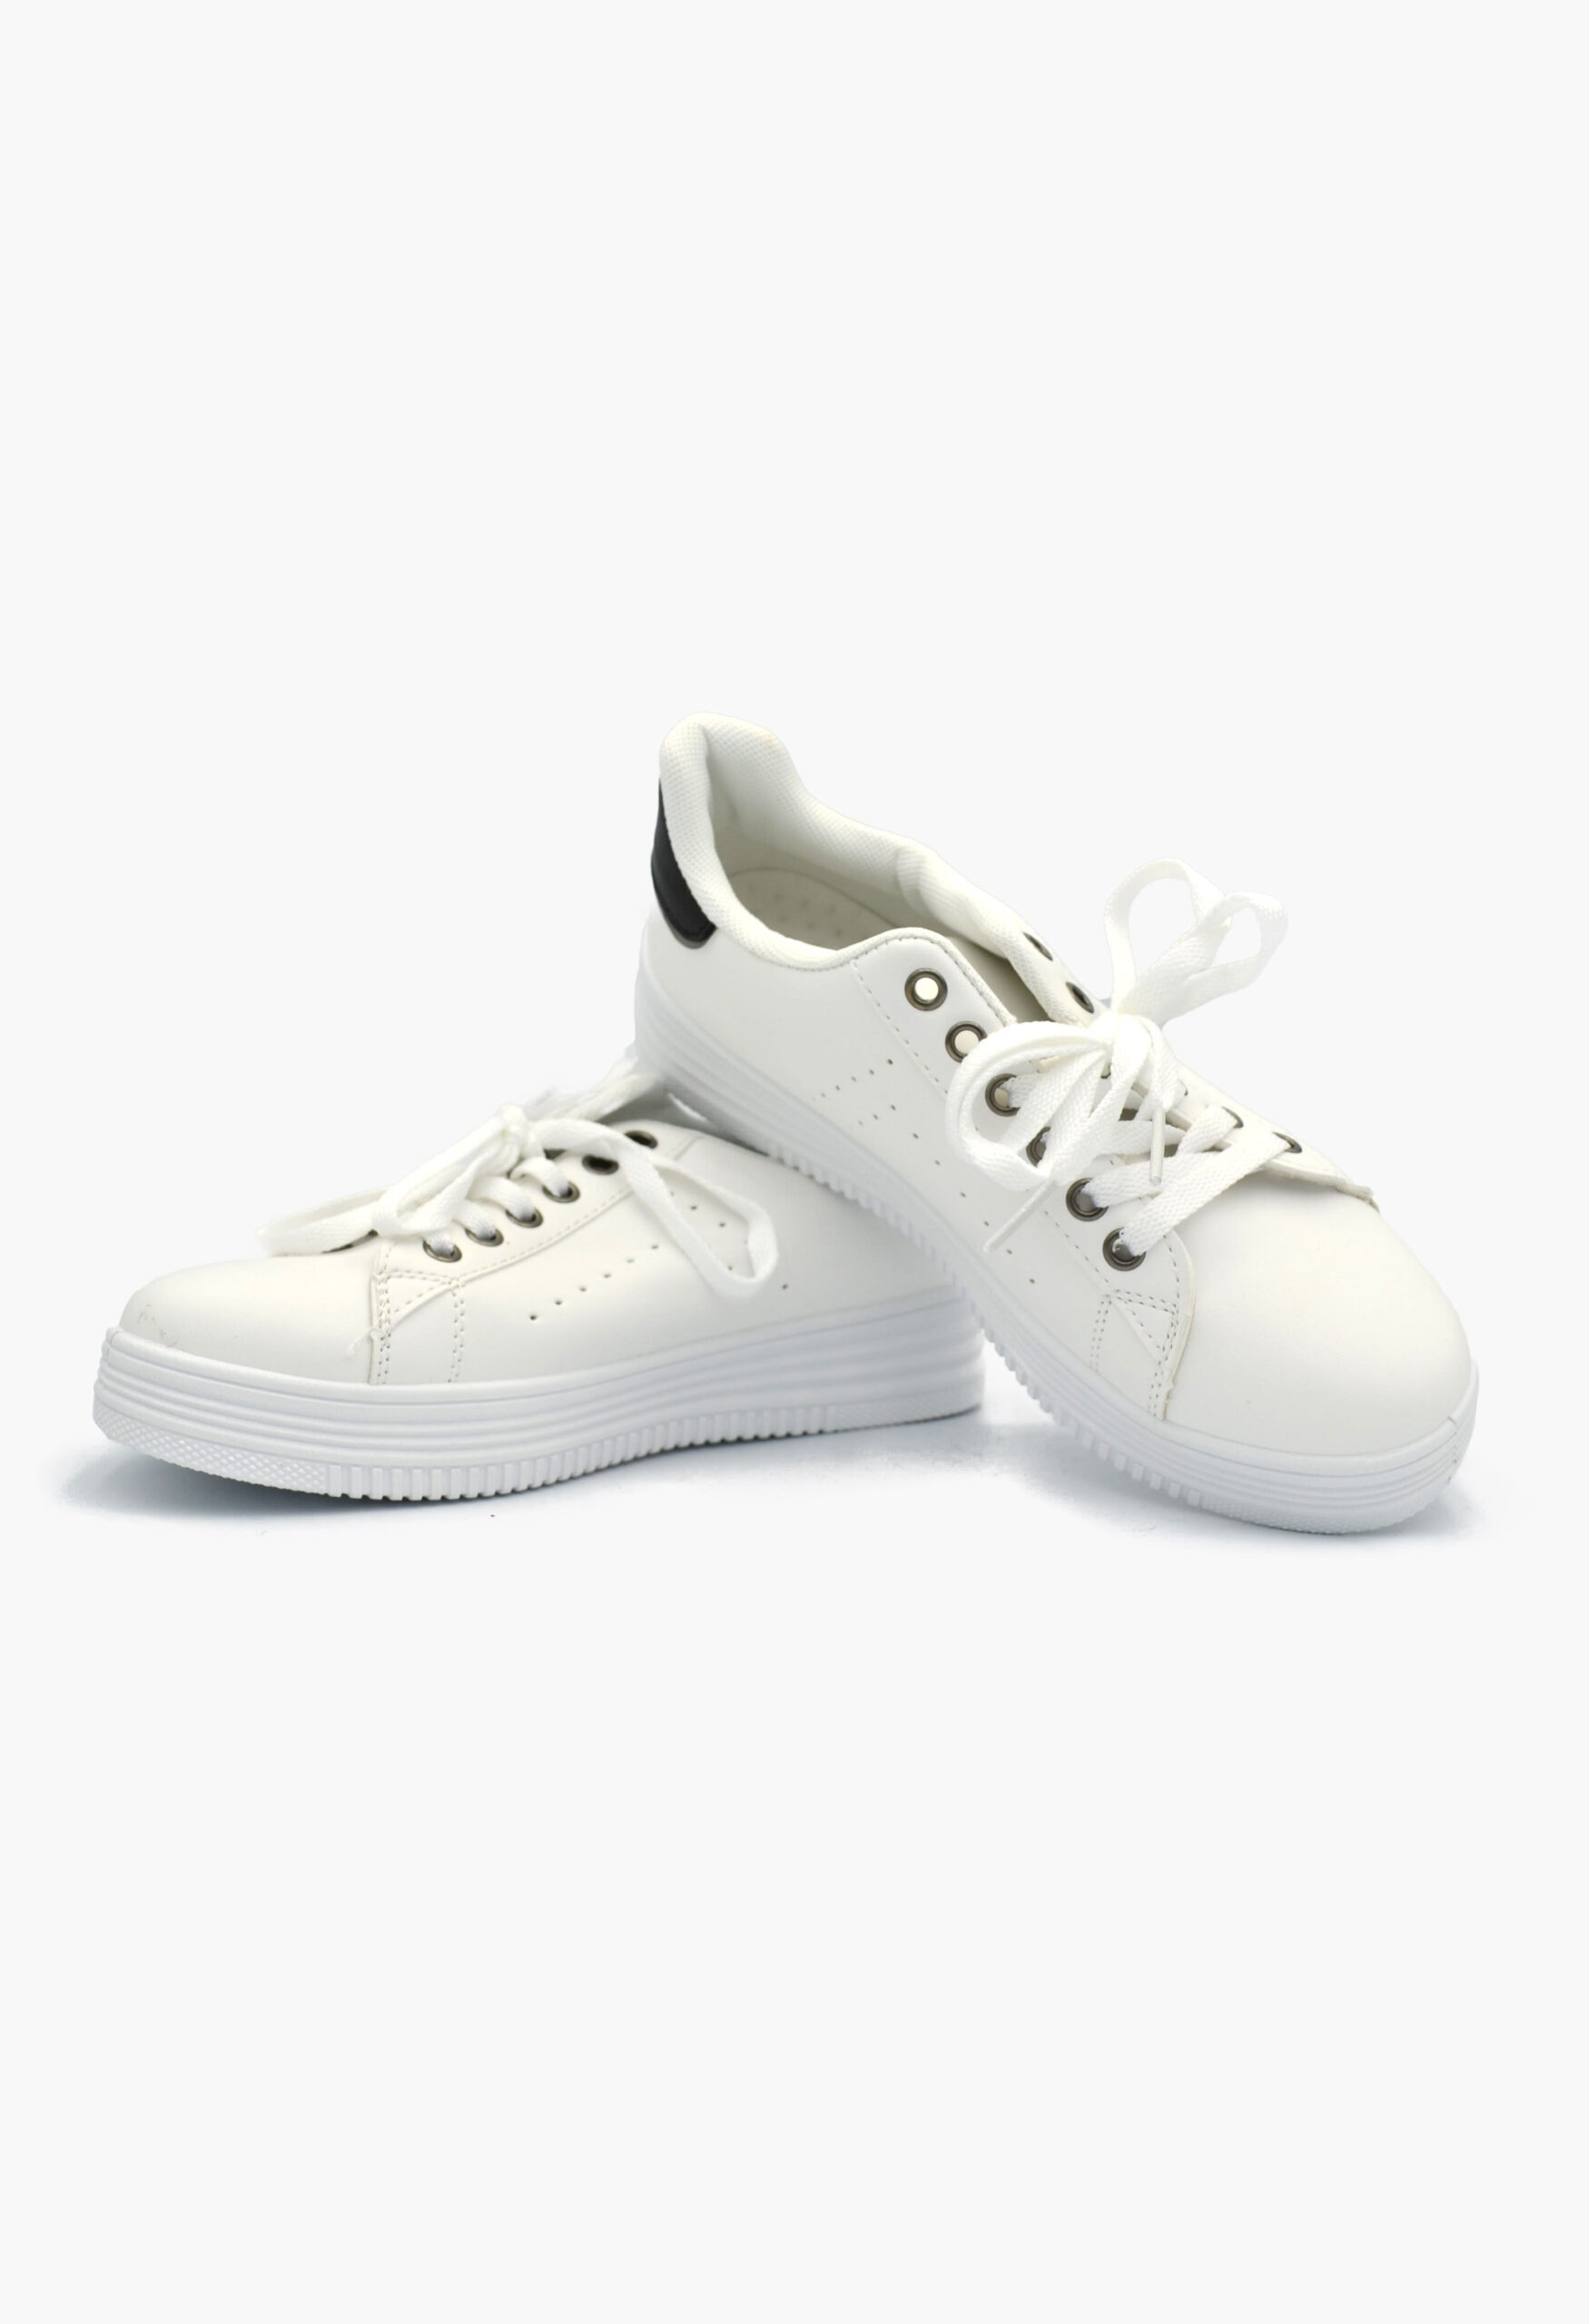 Γυναικεία Flatforms Sneakers Black / White / OX2538 Γυναικεία Αθλητικά και Sneakers joya.gr